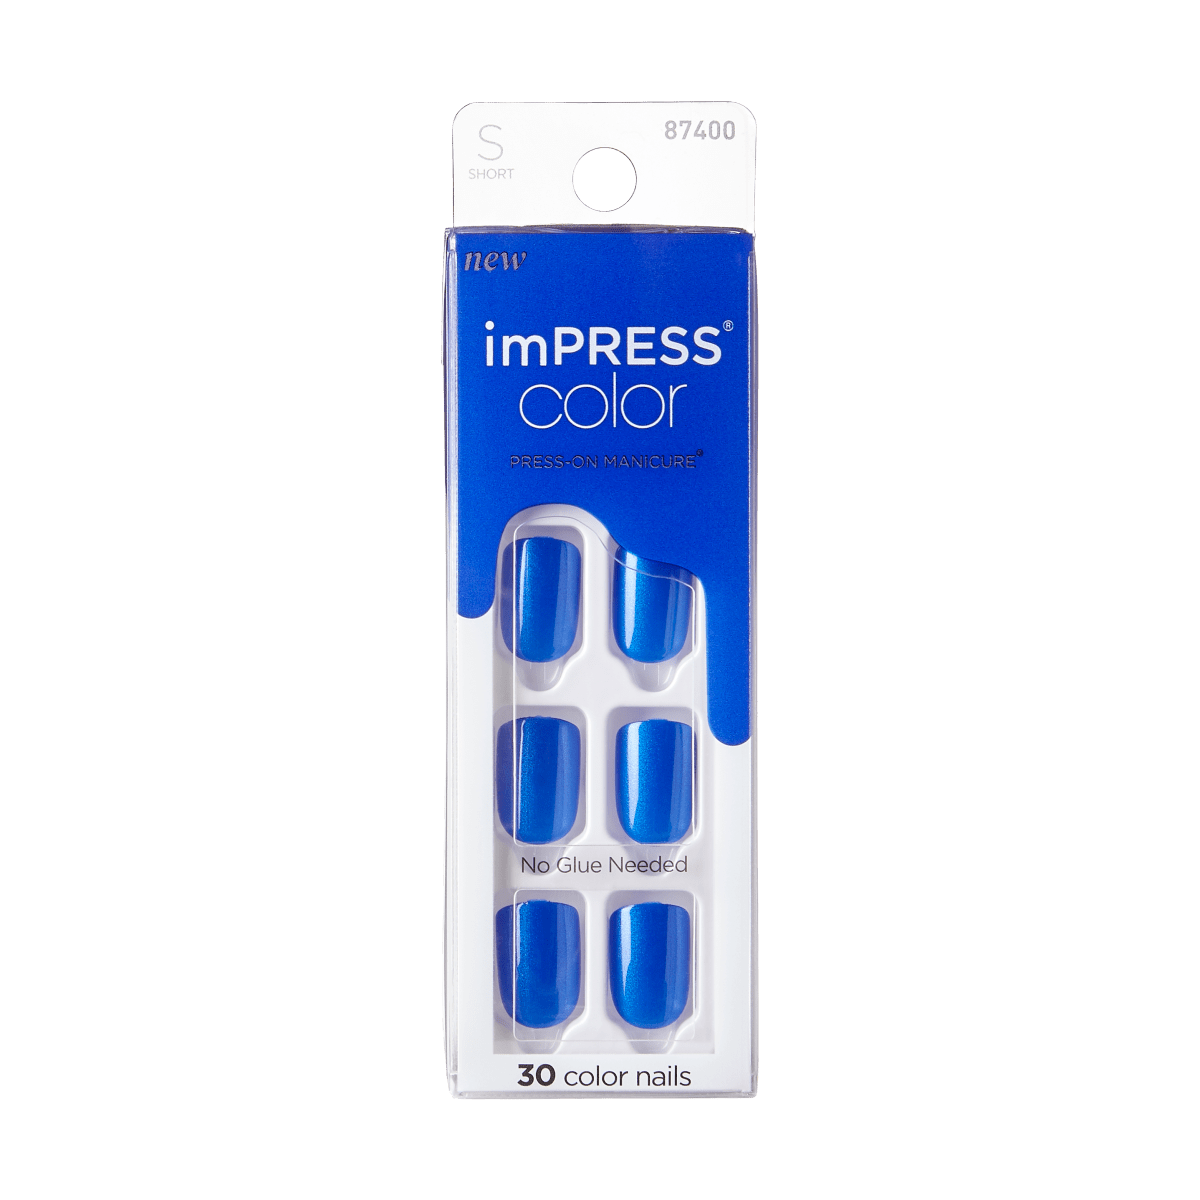 imPRESS Color Press-On Manicure - Deep Ocean